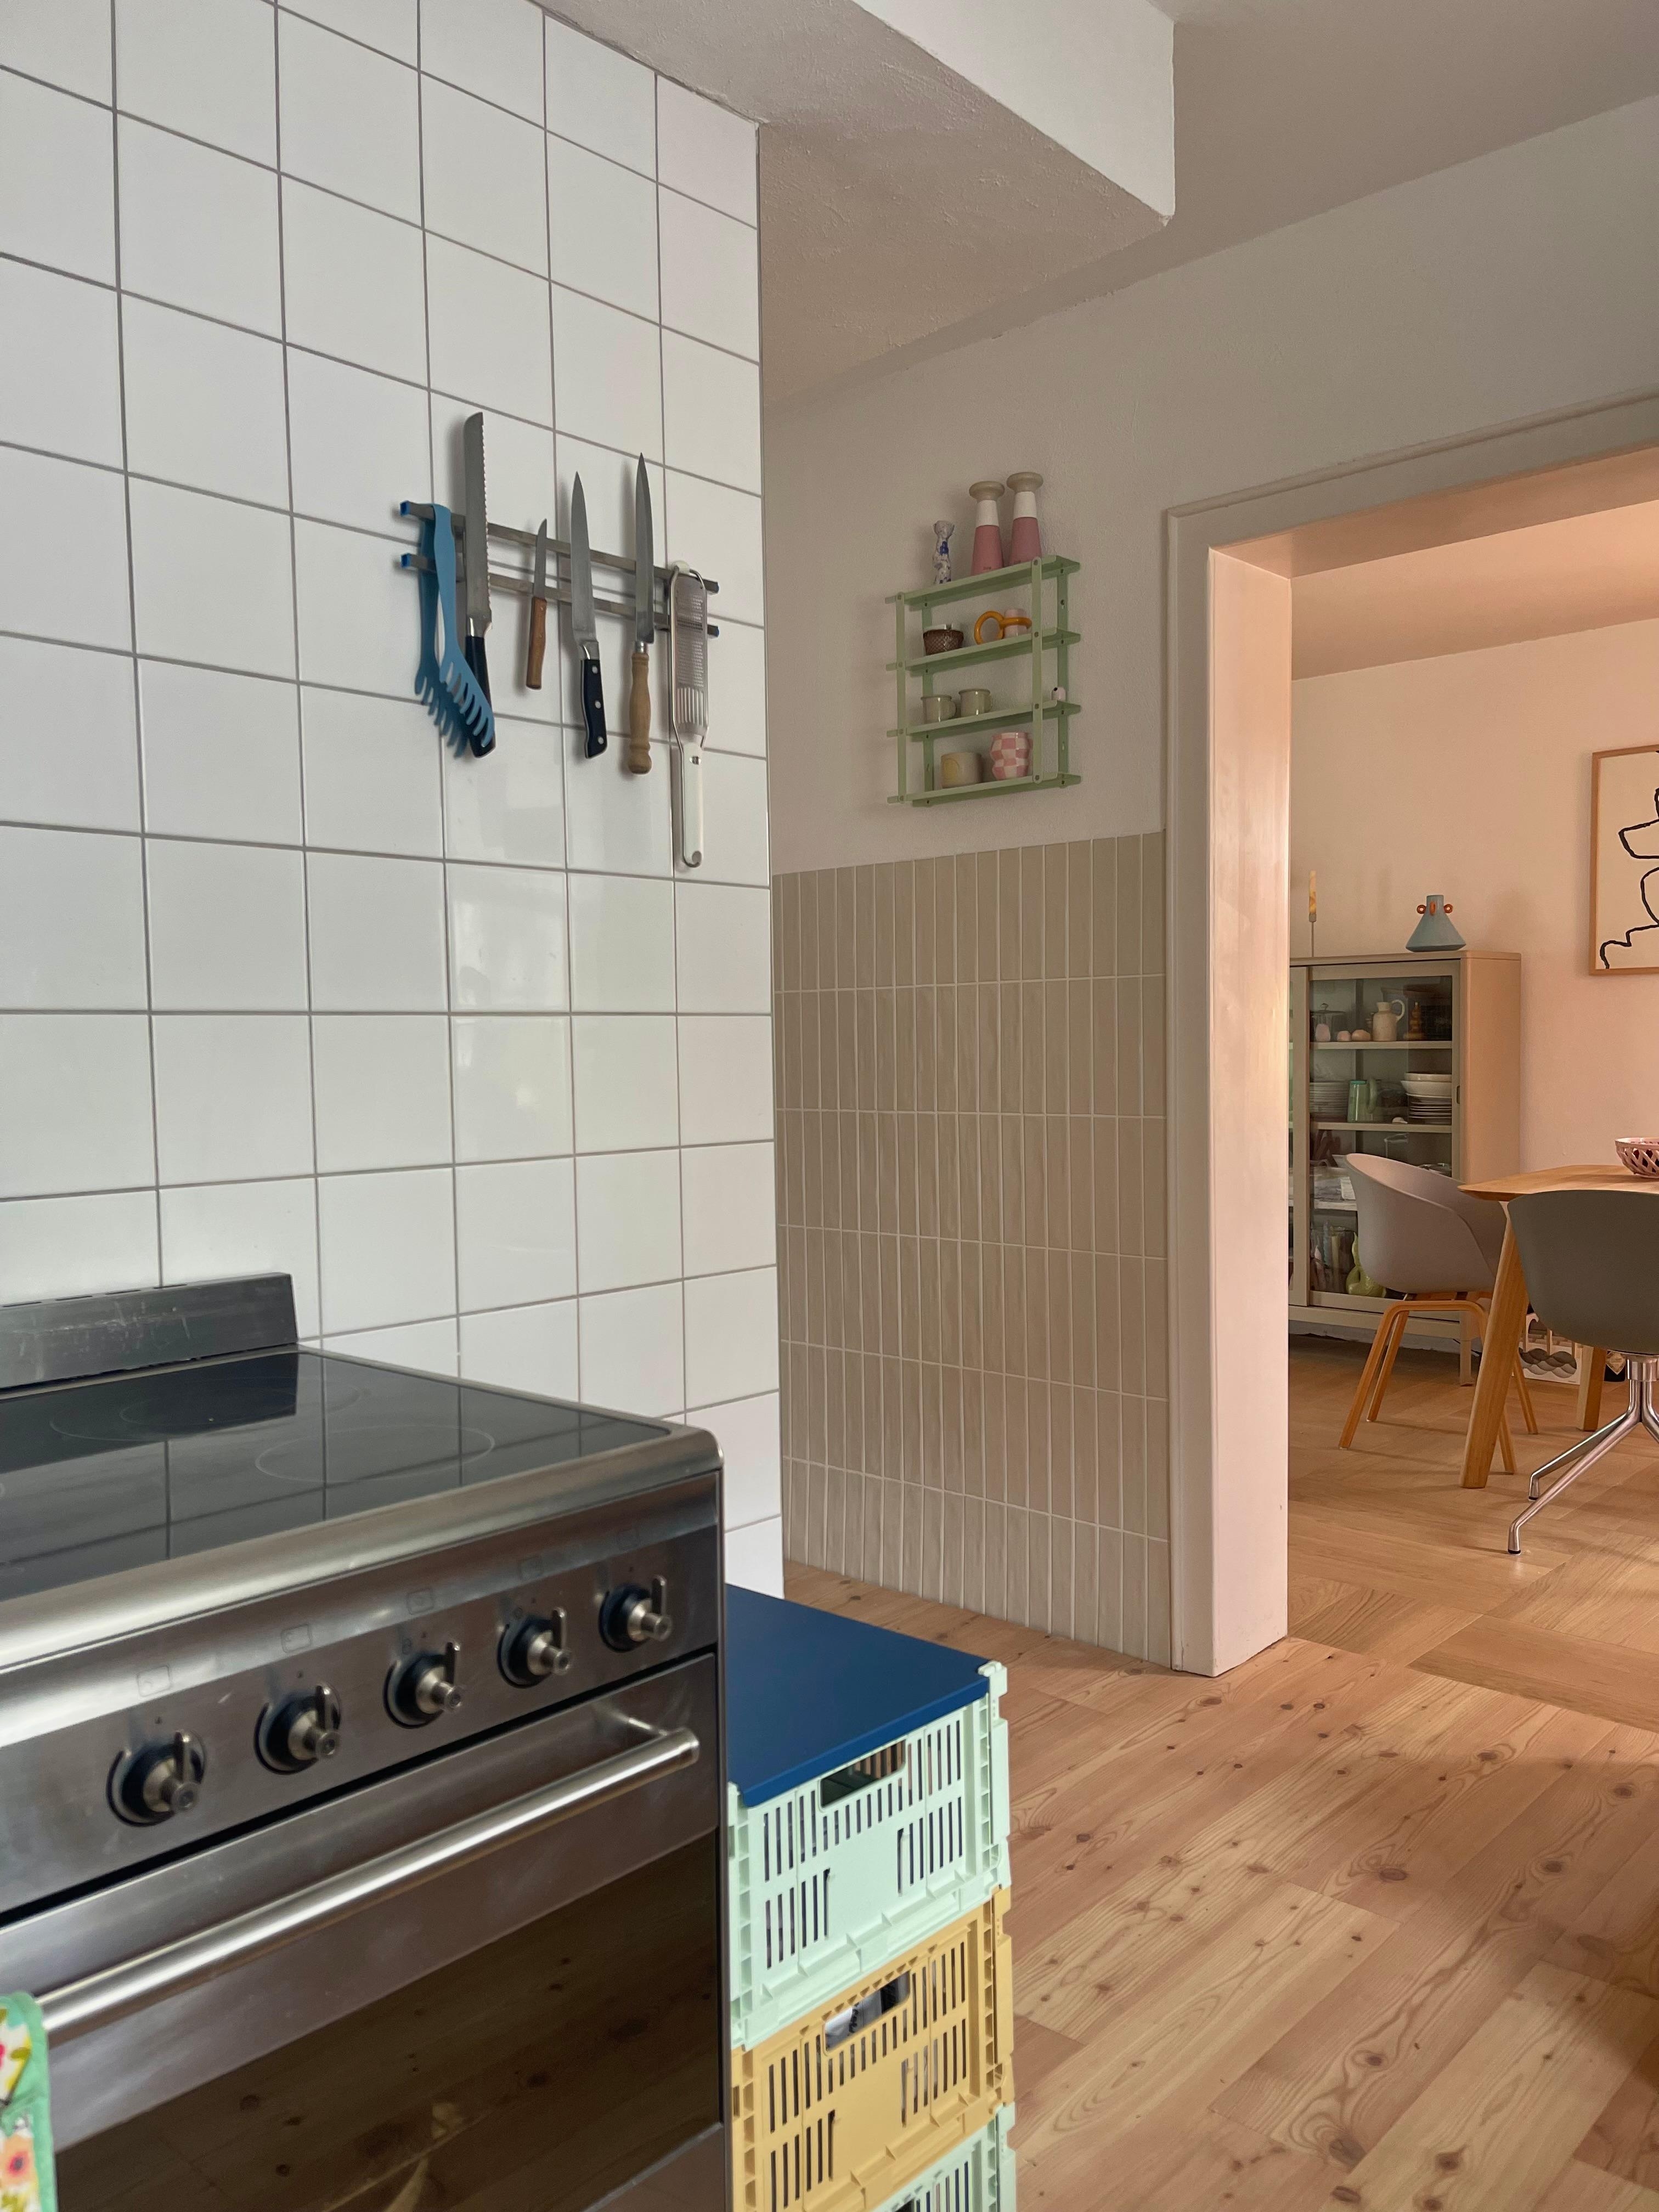 #küche#living#home#interior#interiør#altbauliebe#wohnen#skandinavisch#couchstyle#kitchen#wohnen#living#esszimmer#weekend